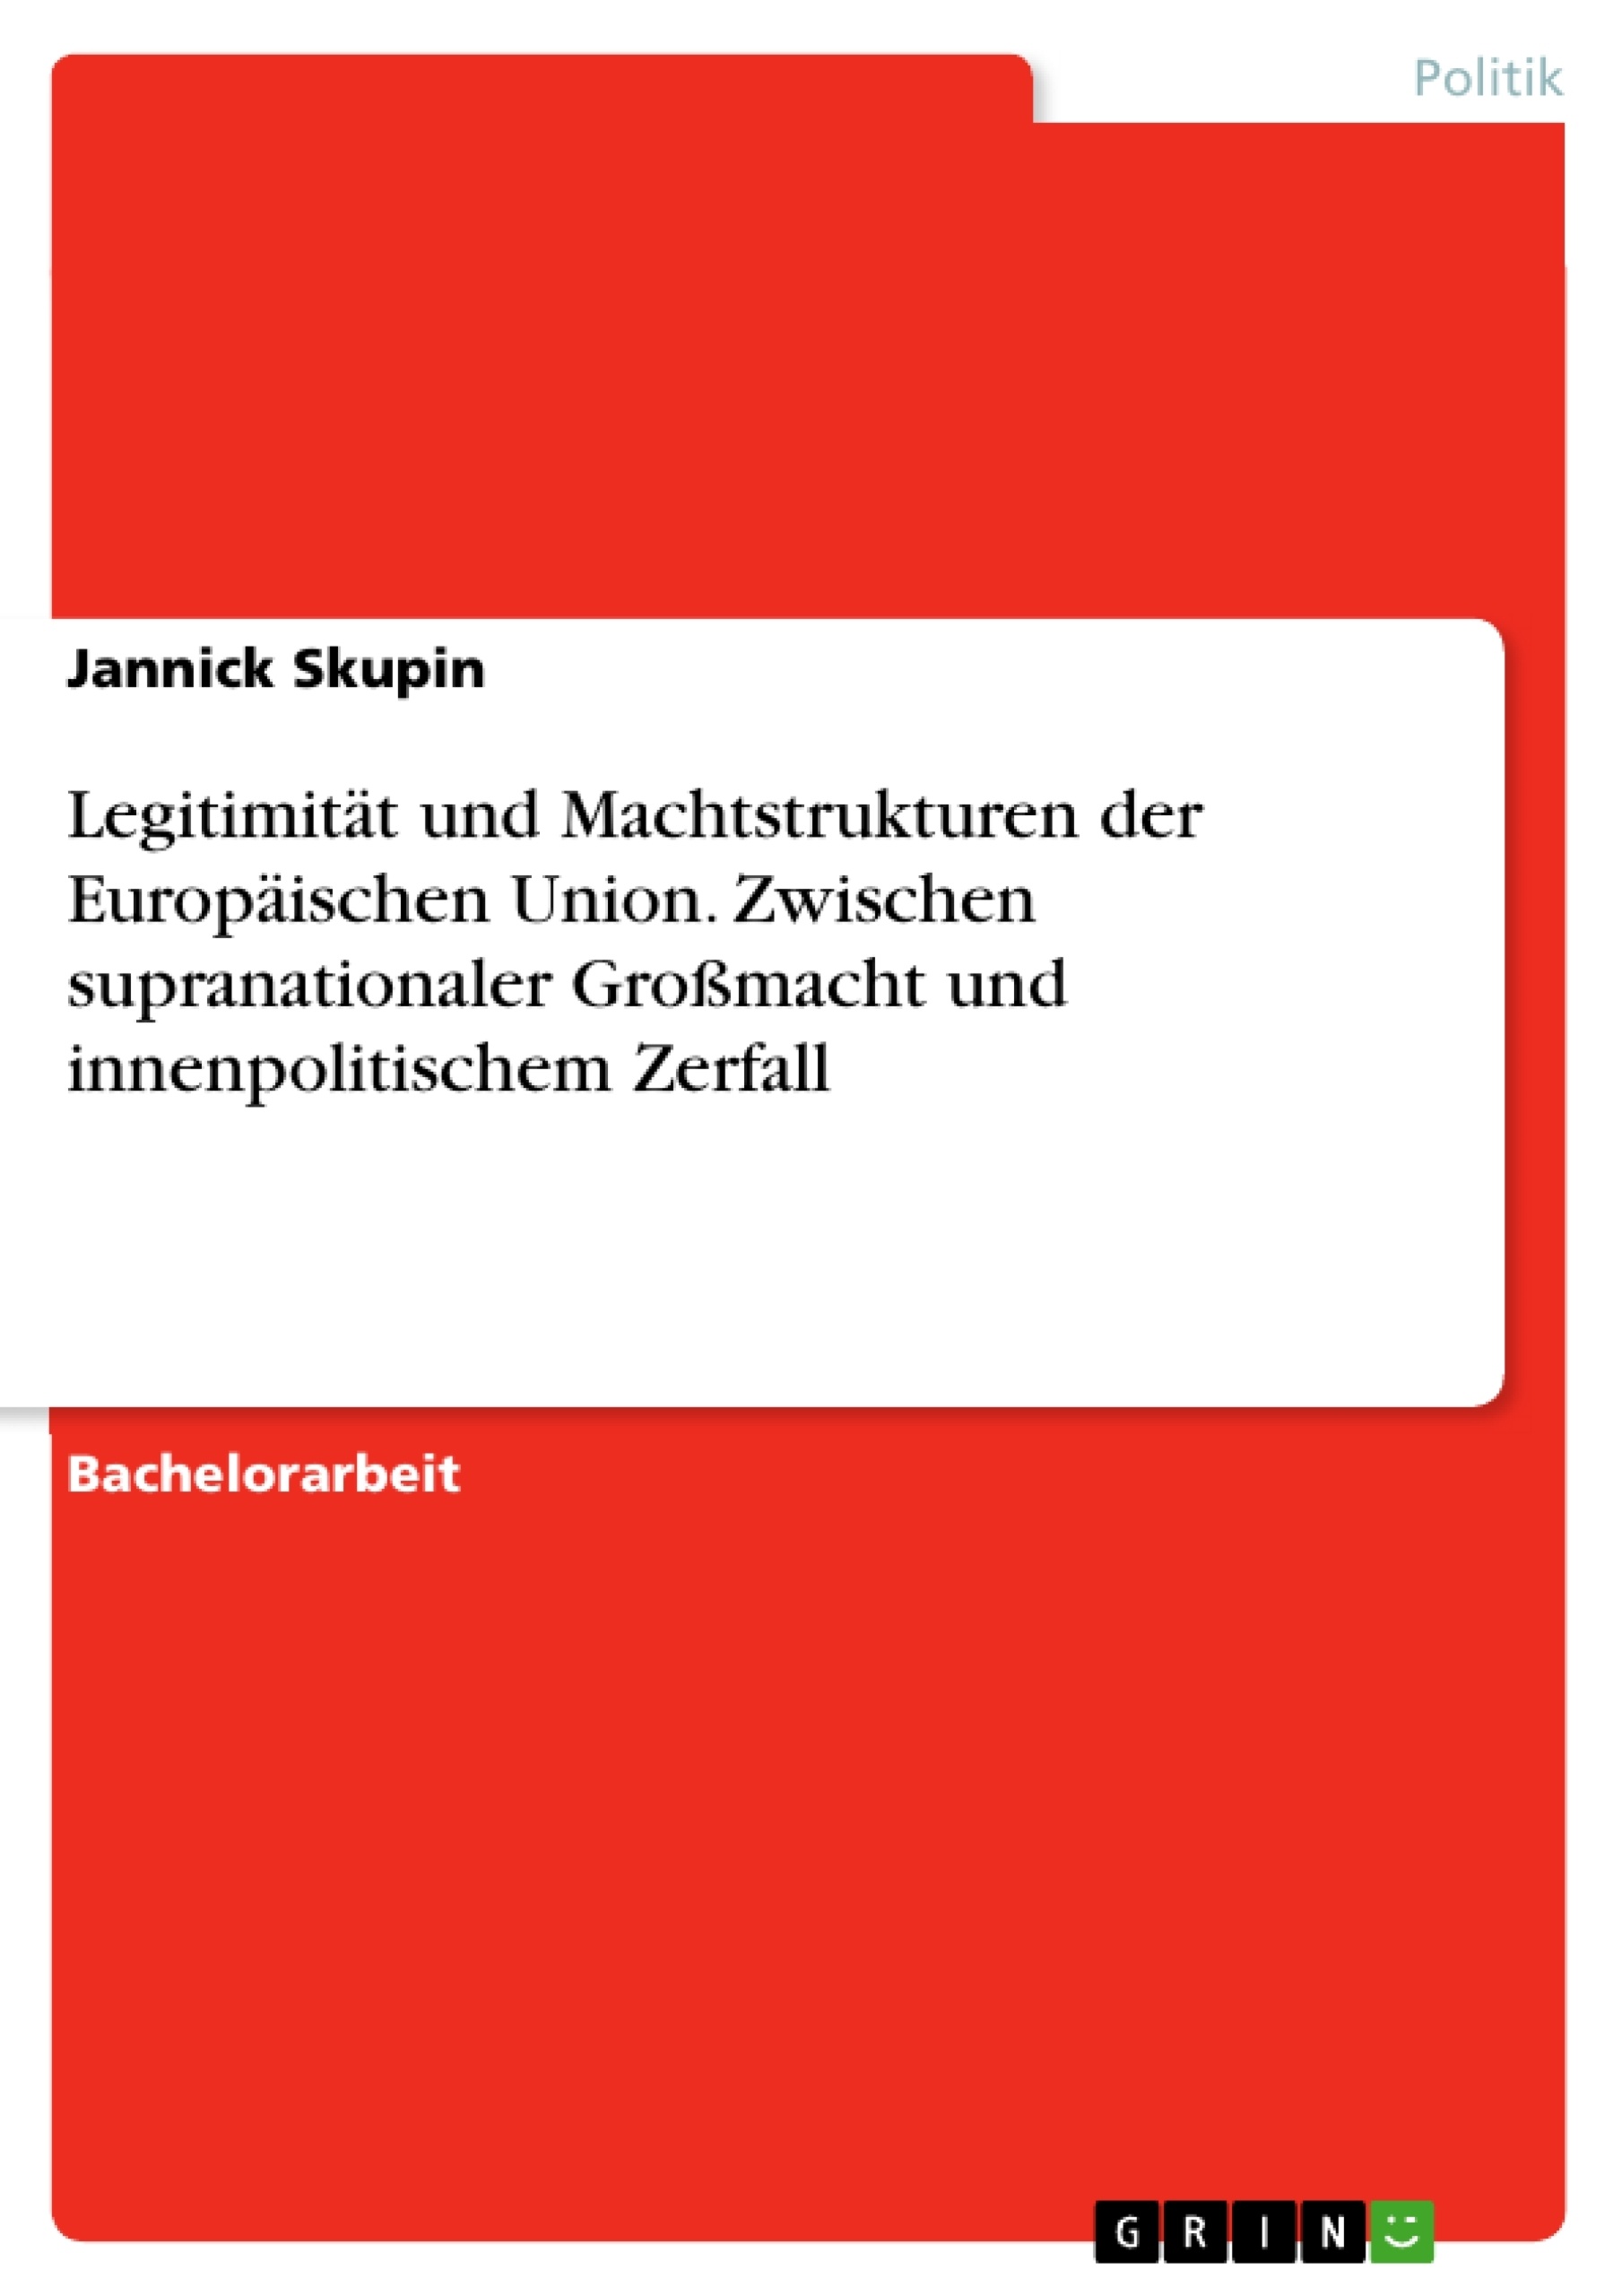 Titel: Legitimität und Machtstrukturen der Europäischen Union. Zwischen supranationaler Großmacht und innenpolitischem Zerfall